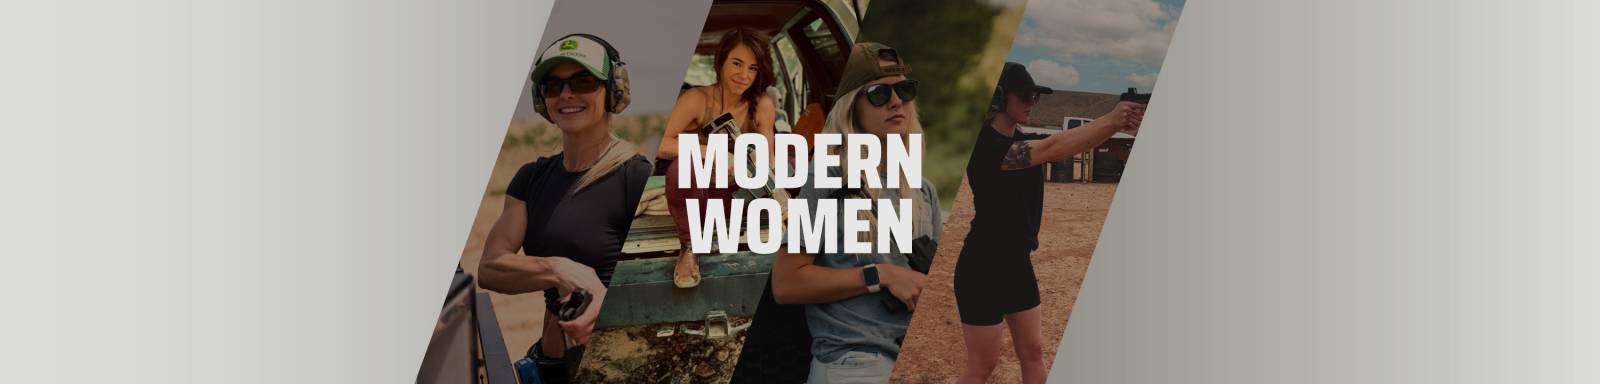 modern women